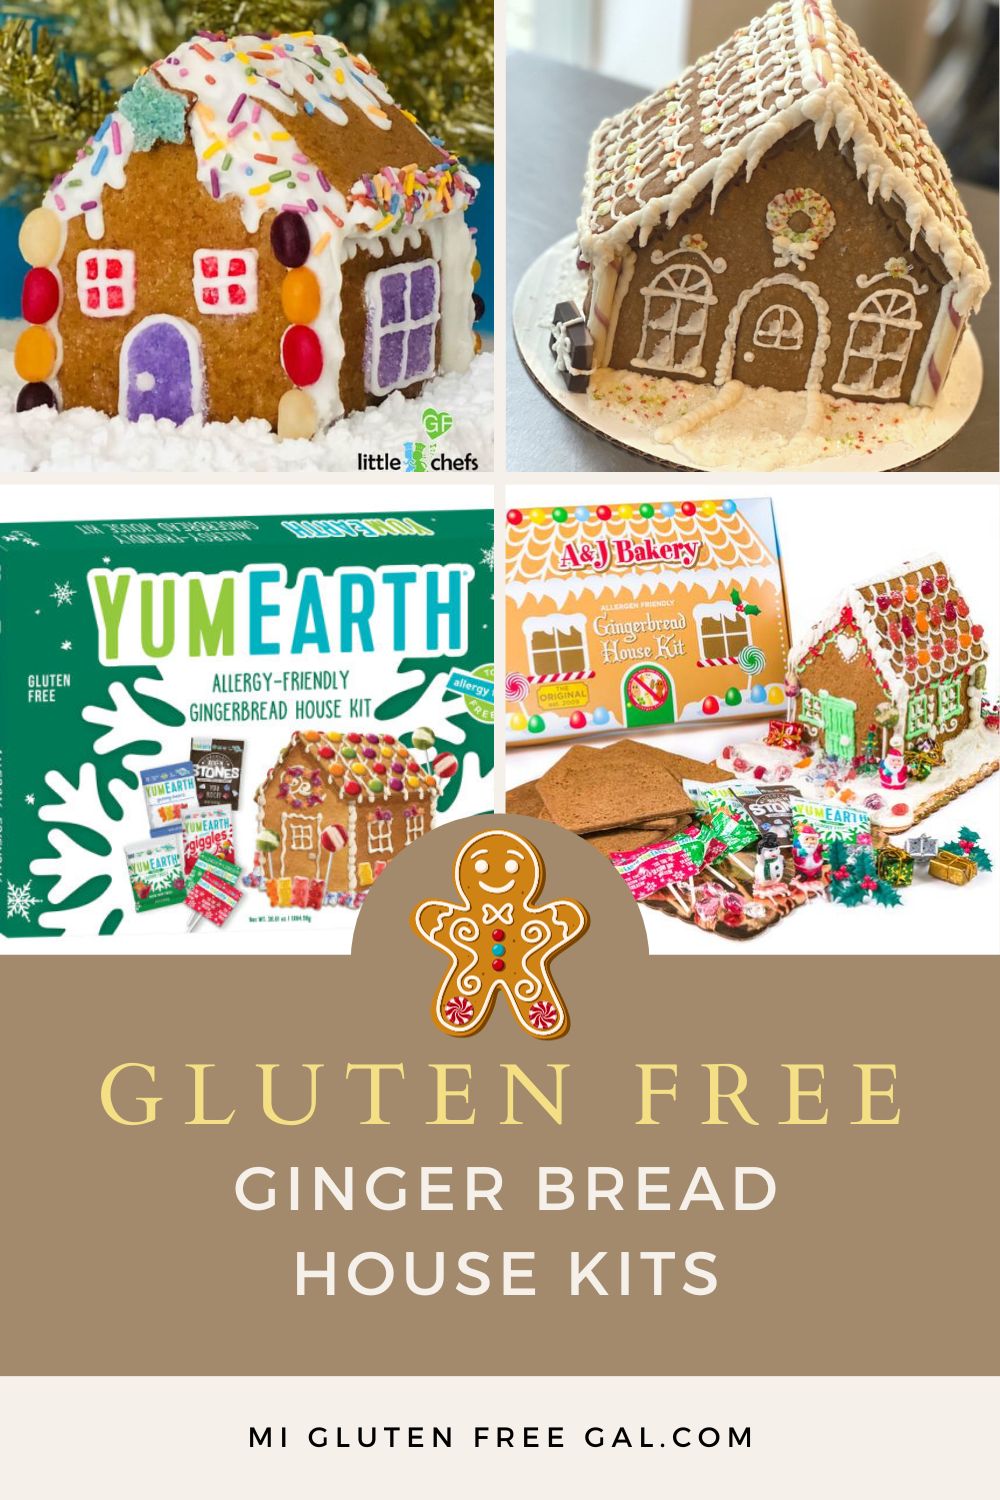 https://miglutenfreegal.com/wp-content/uploads/2019/11/gingerbread-house-kits-pin.jpg